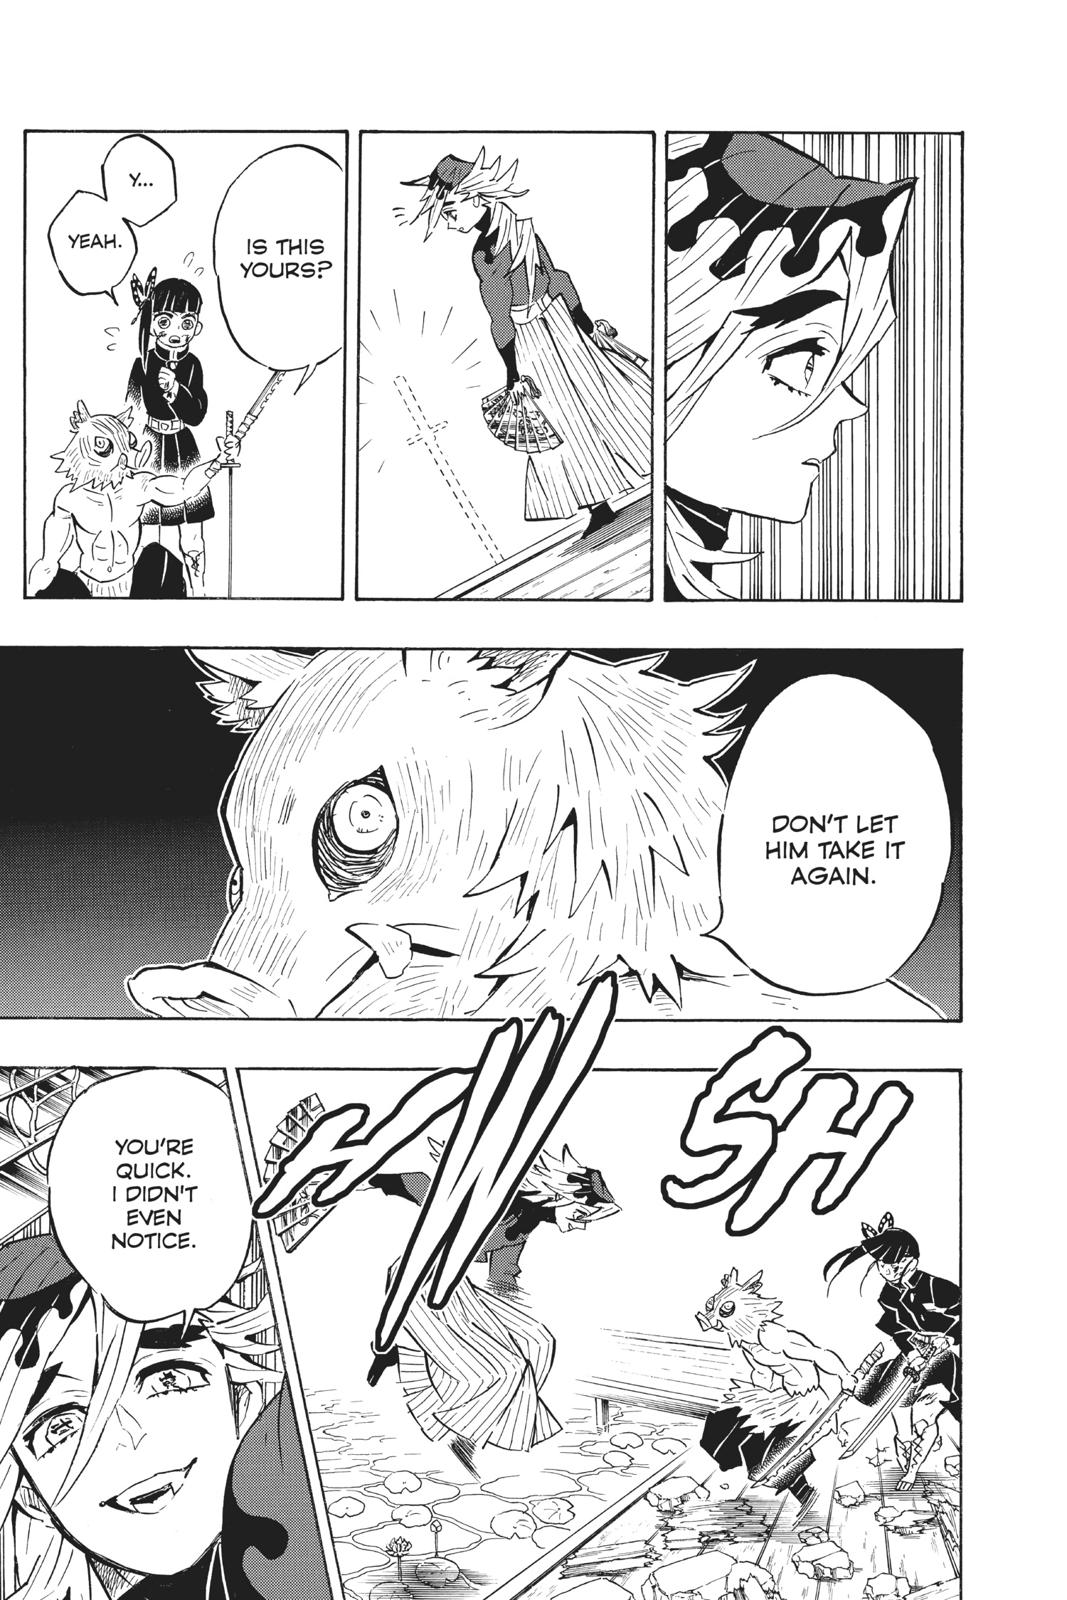 Demon Slayer Manga Manga Chapter - 159 - image 11